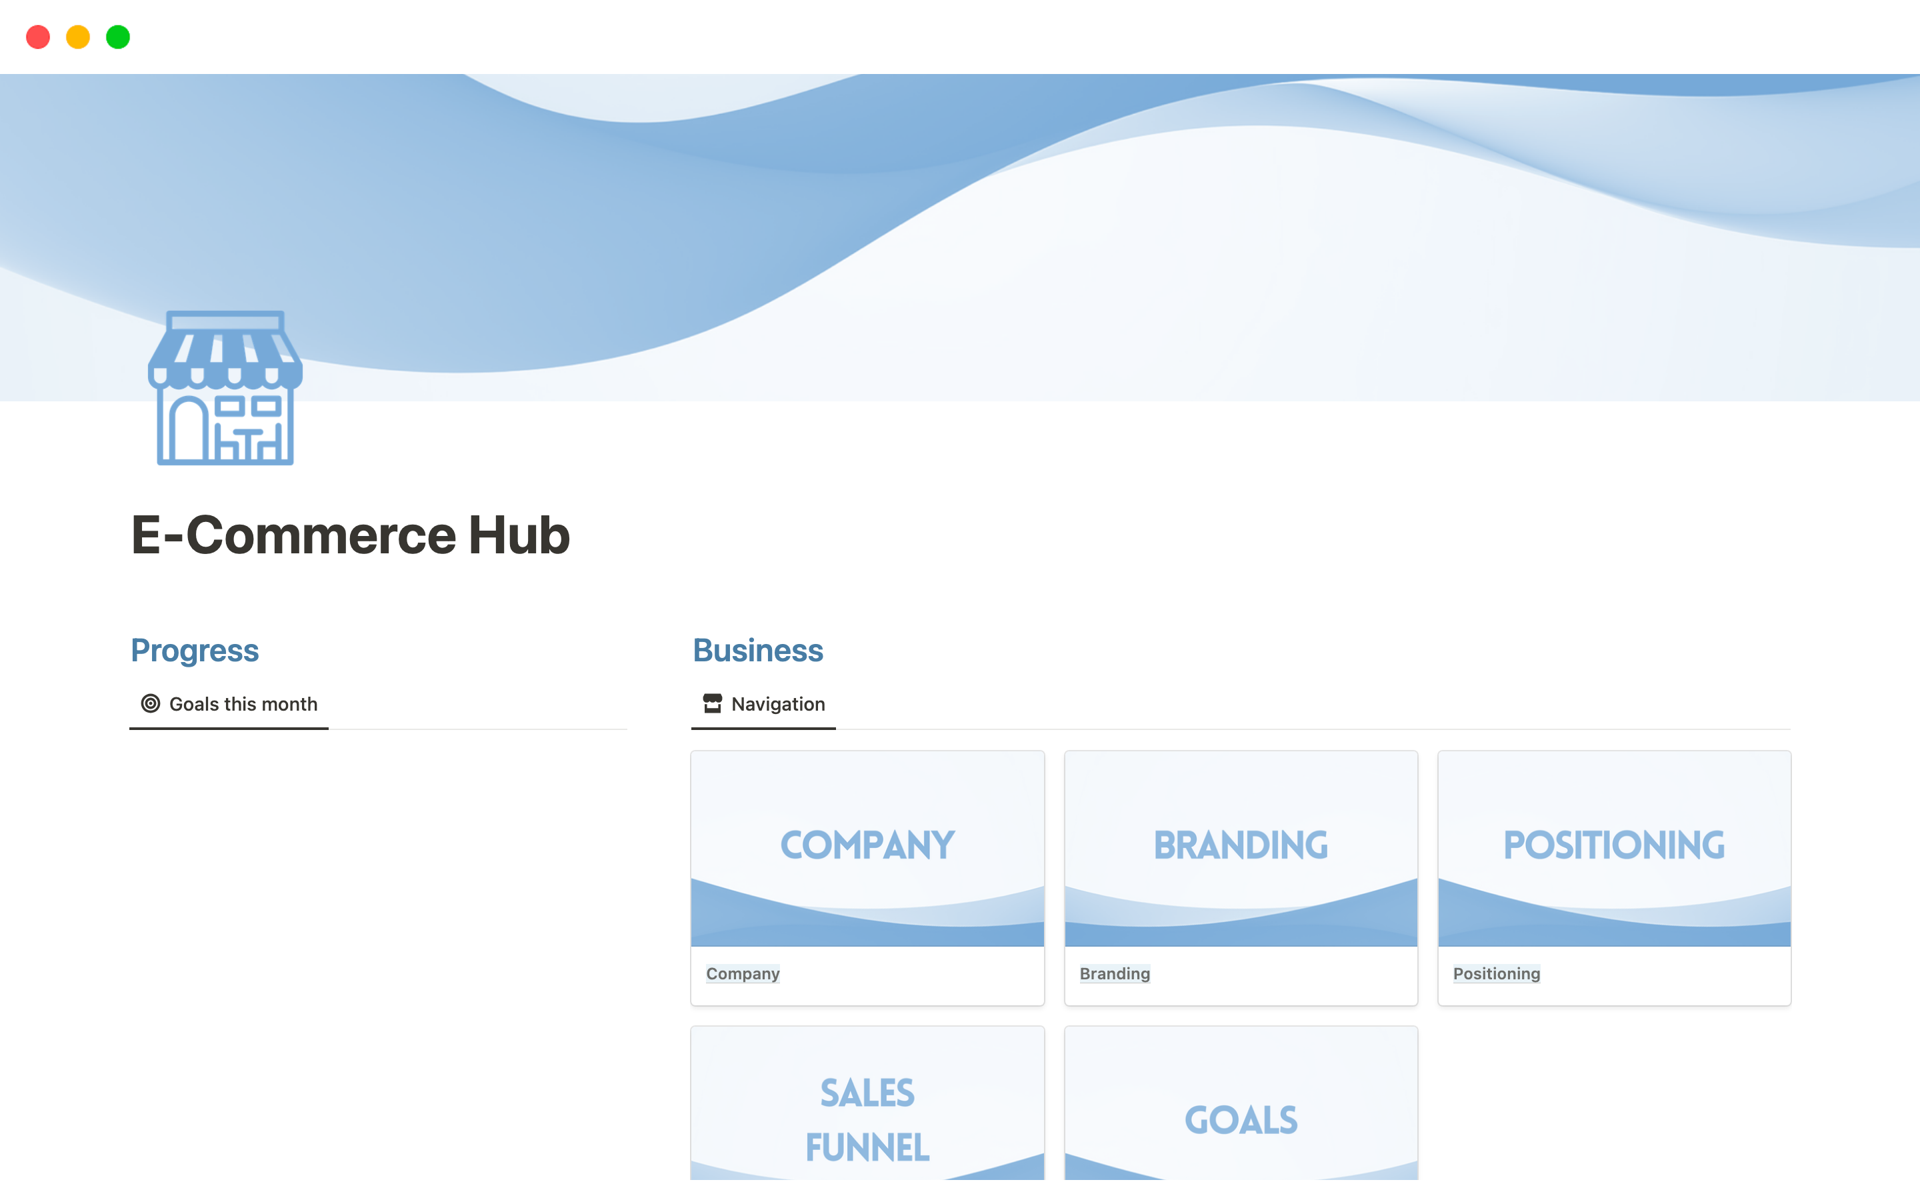 Vista previa de una plantilla para E-Commerce Hub